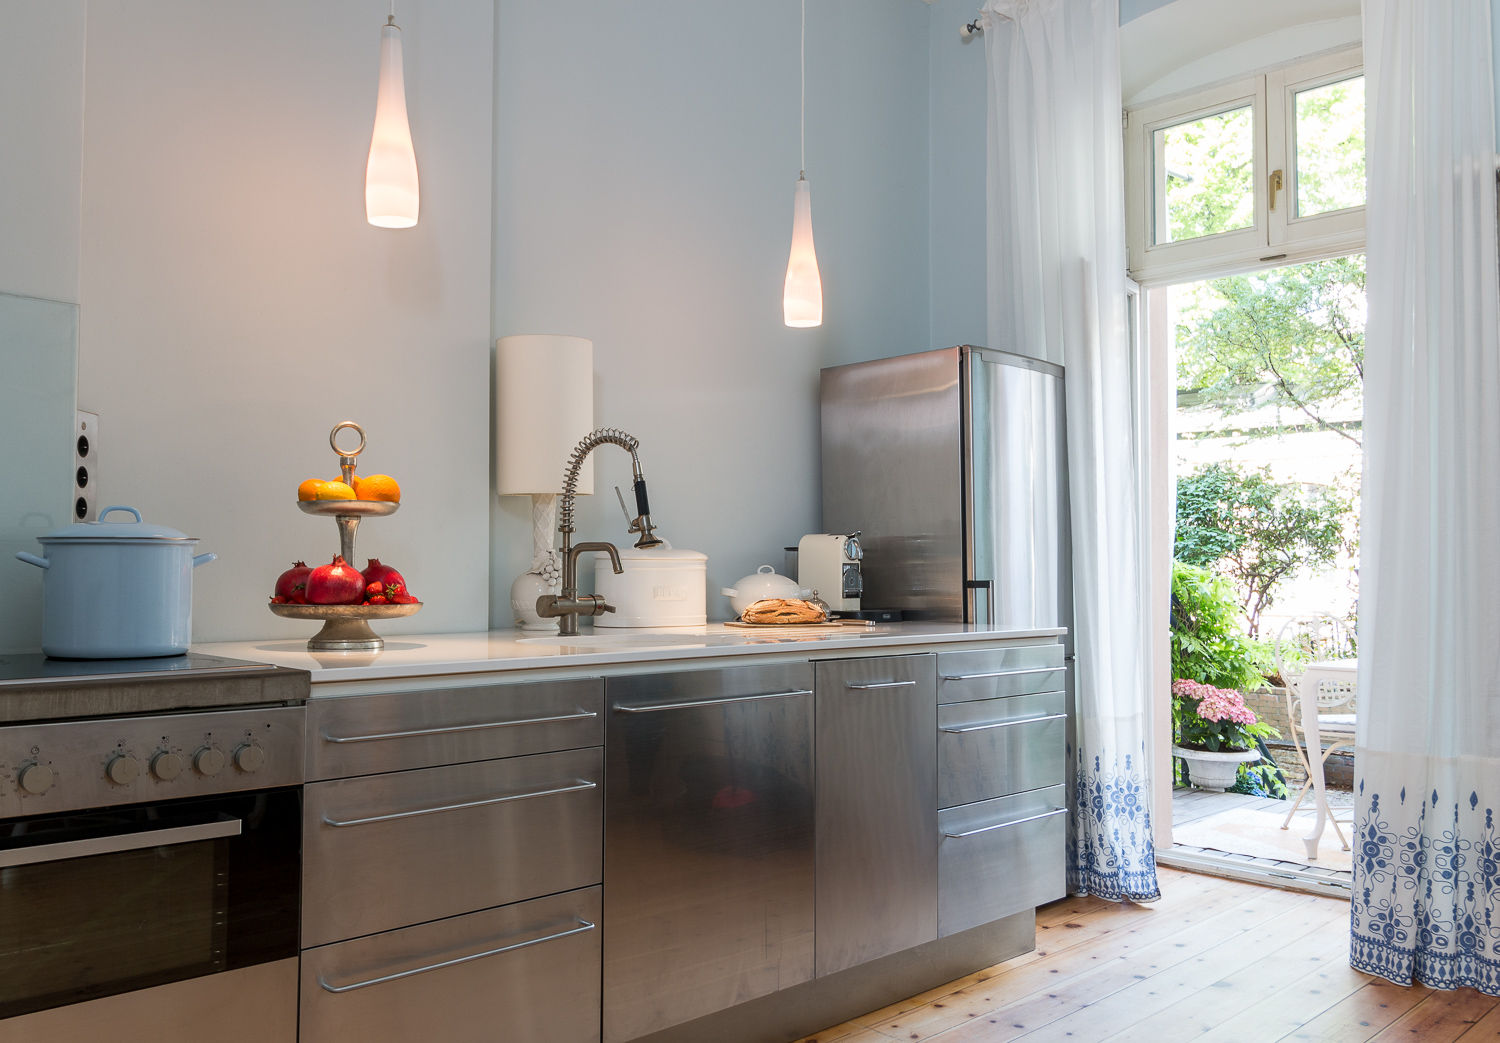 Carlo Berlin Architektur & Interior Design, Pamela Kilcoyne - Homify Pamela Kilcoyne - Homify Classic style kitchen